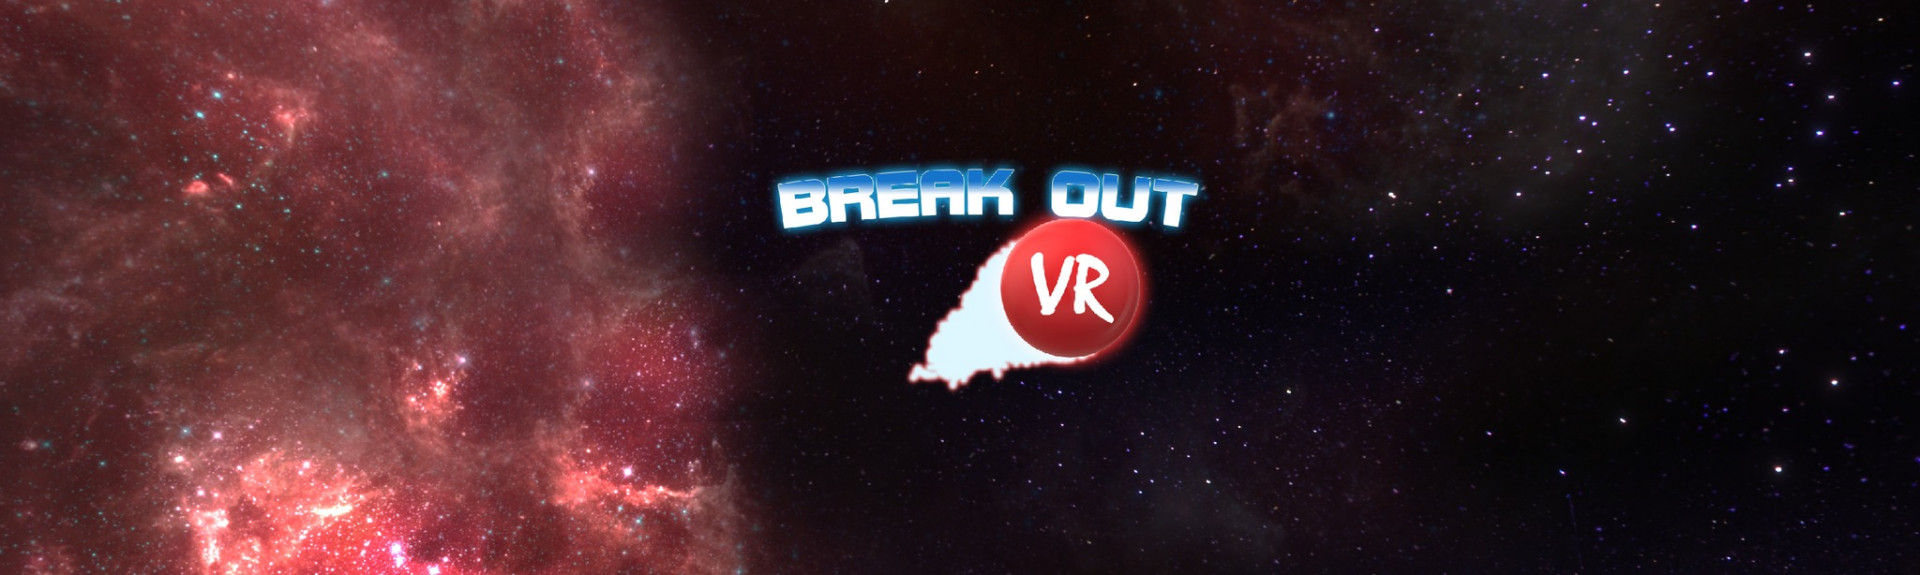 Break Out VR